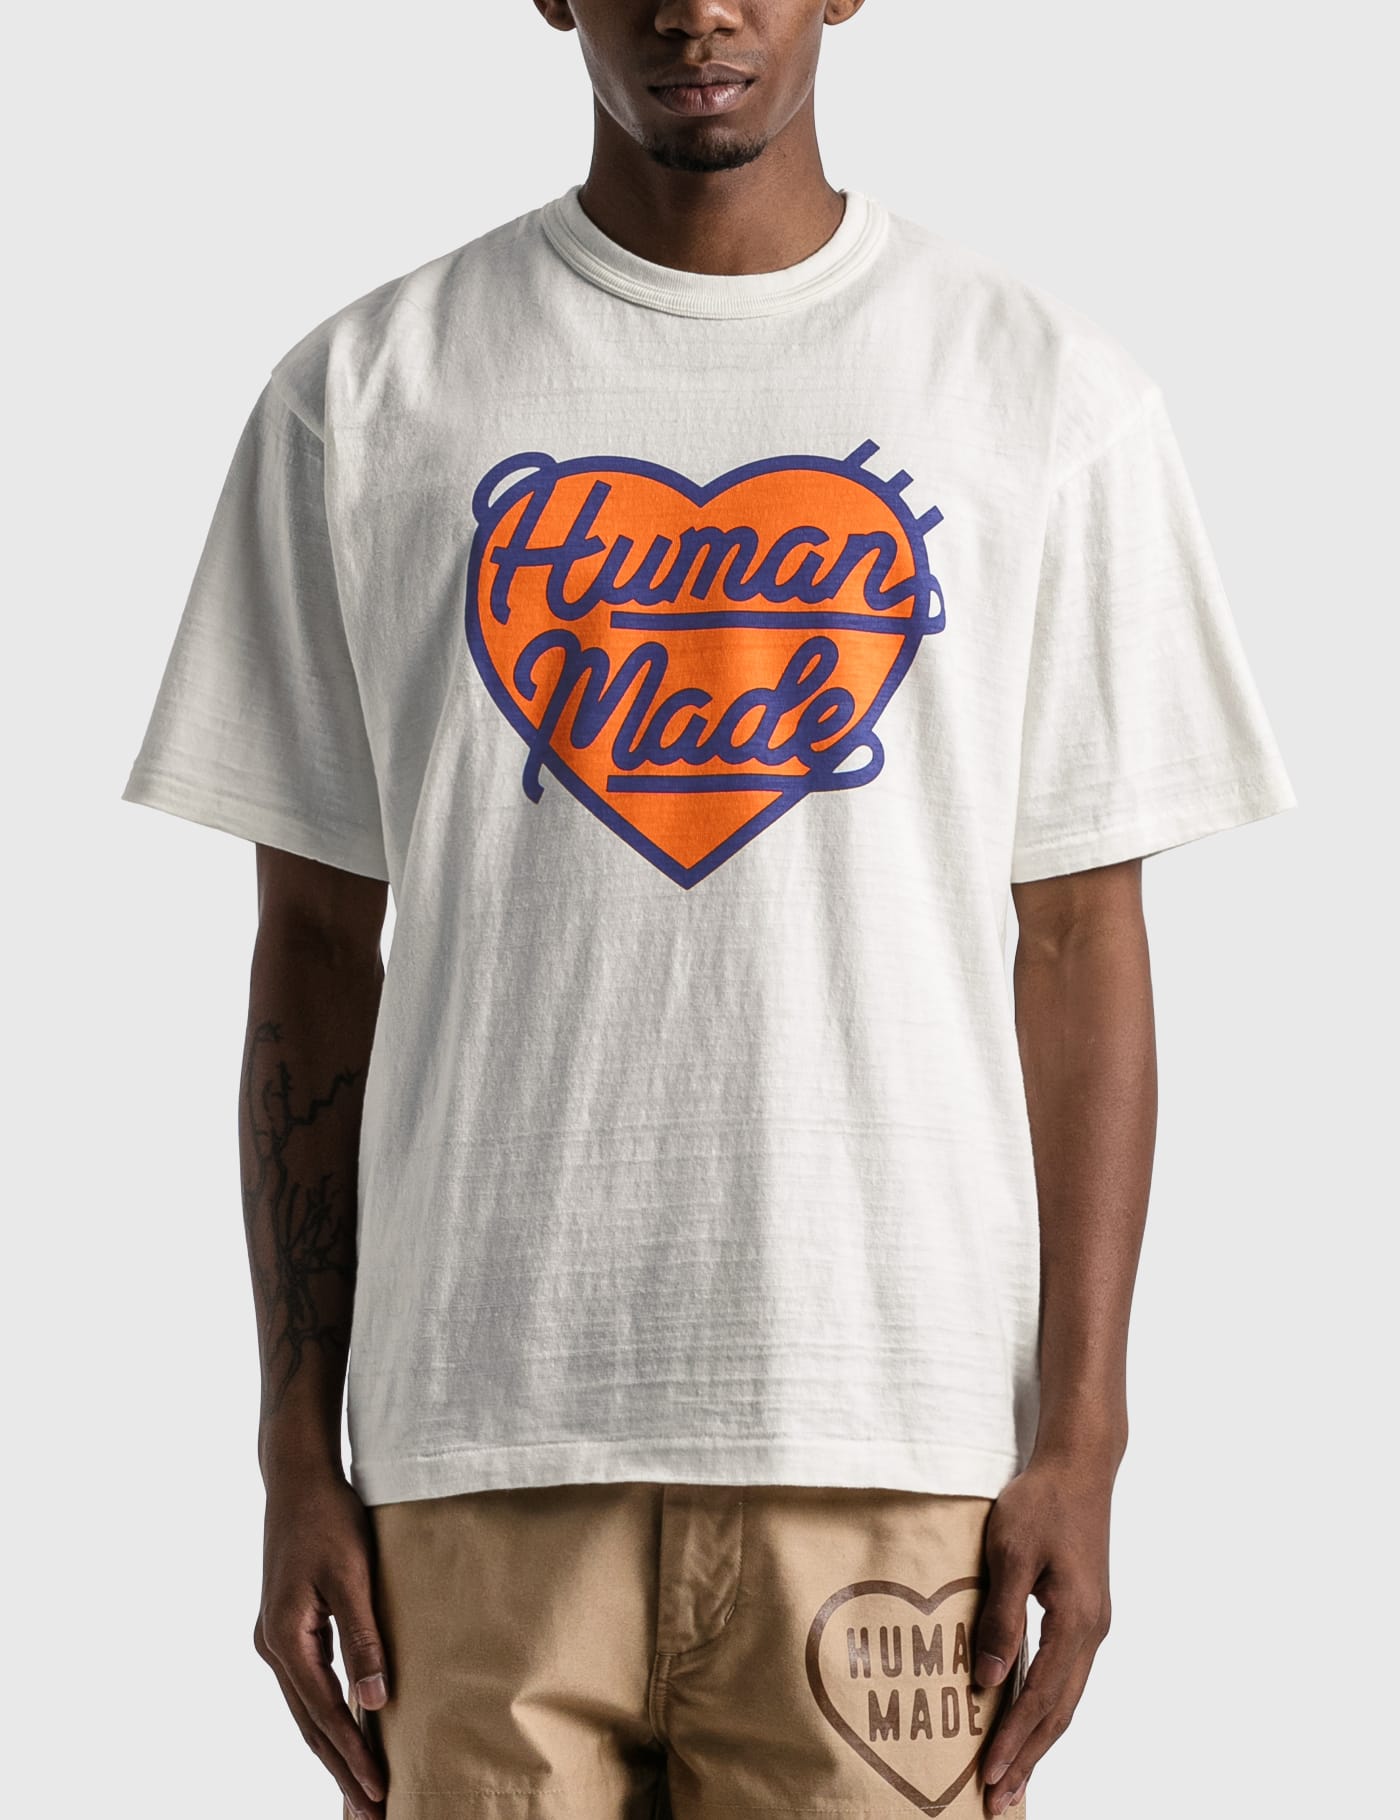 Human Made - Tシャツ #2210 | HBX - ハイプビースト(Hypebeast)が厳選 